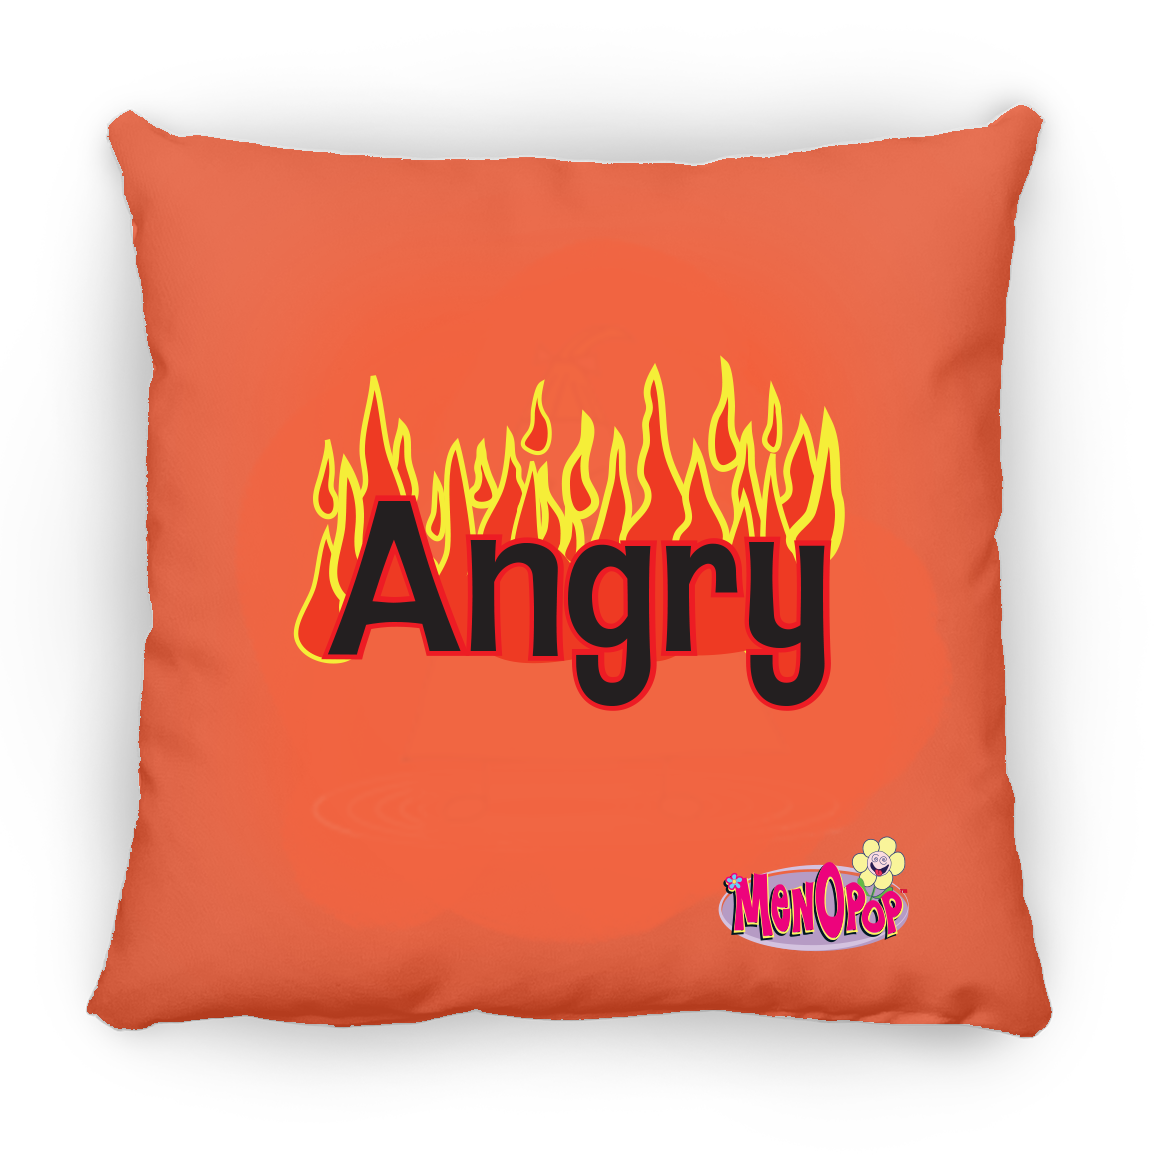 MOOD Pillow: ANGRY AGNES